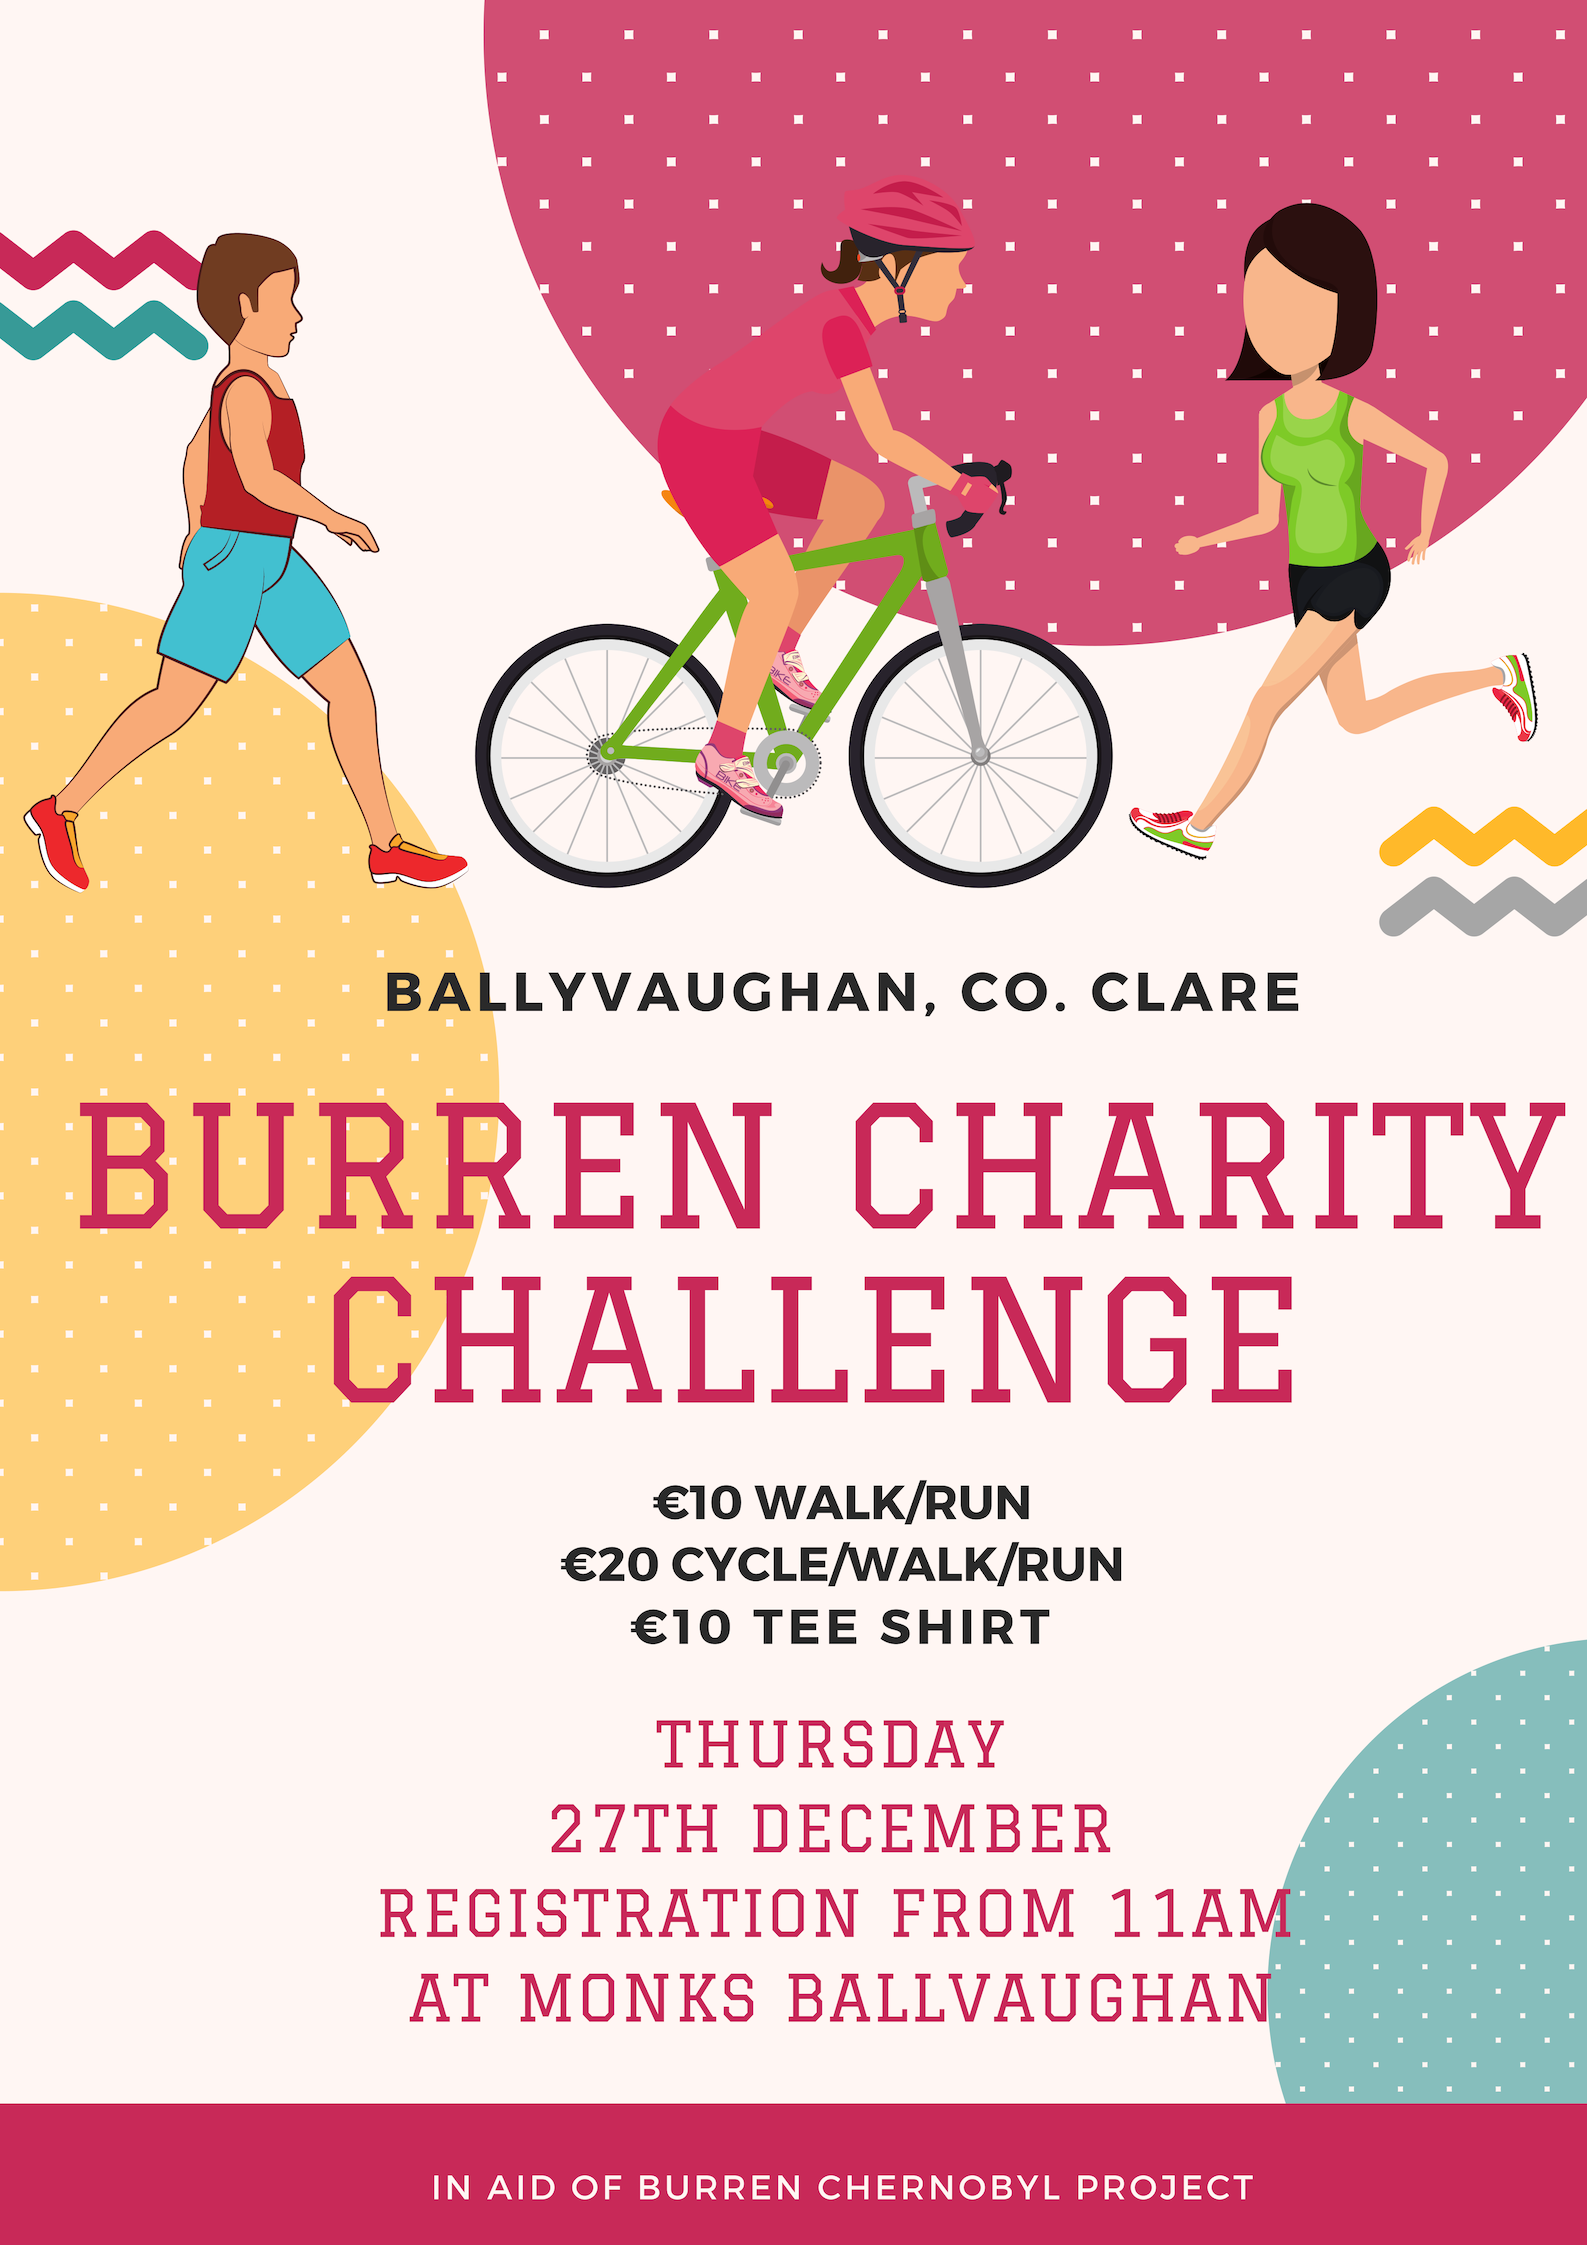 Burren Charity Challenge